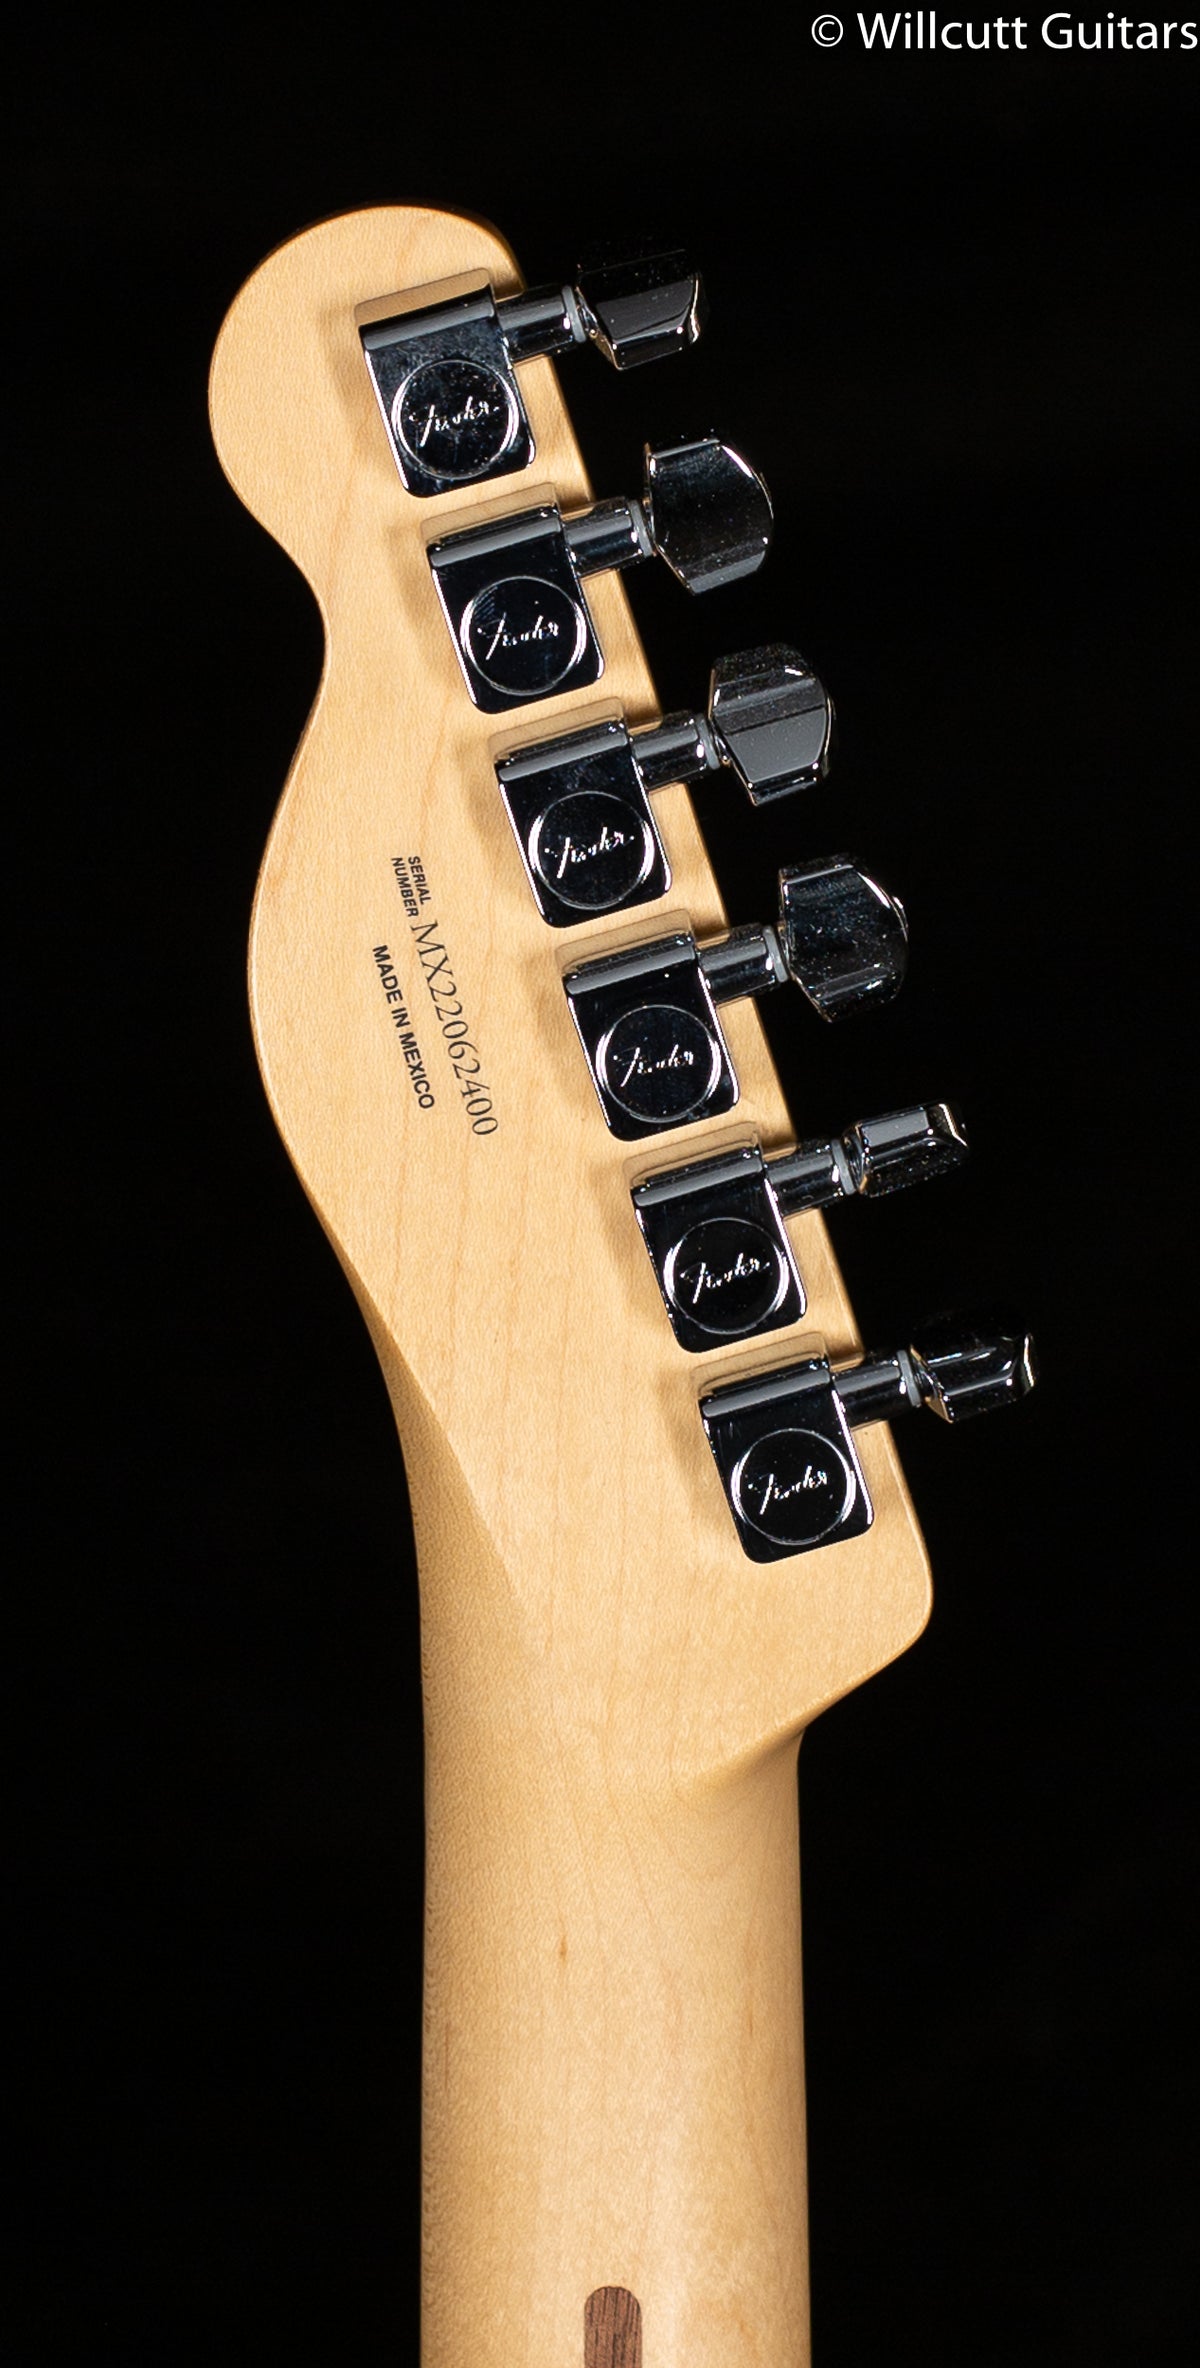 Fender Player Telecaster Maple Fingerboard Electric Guitar 3-Color Sunburst